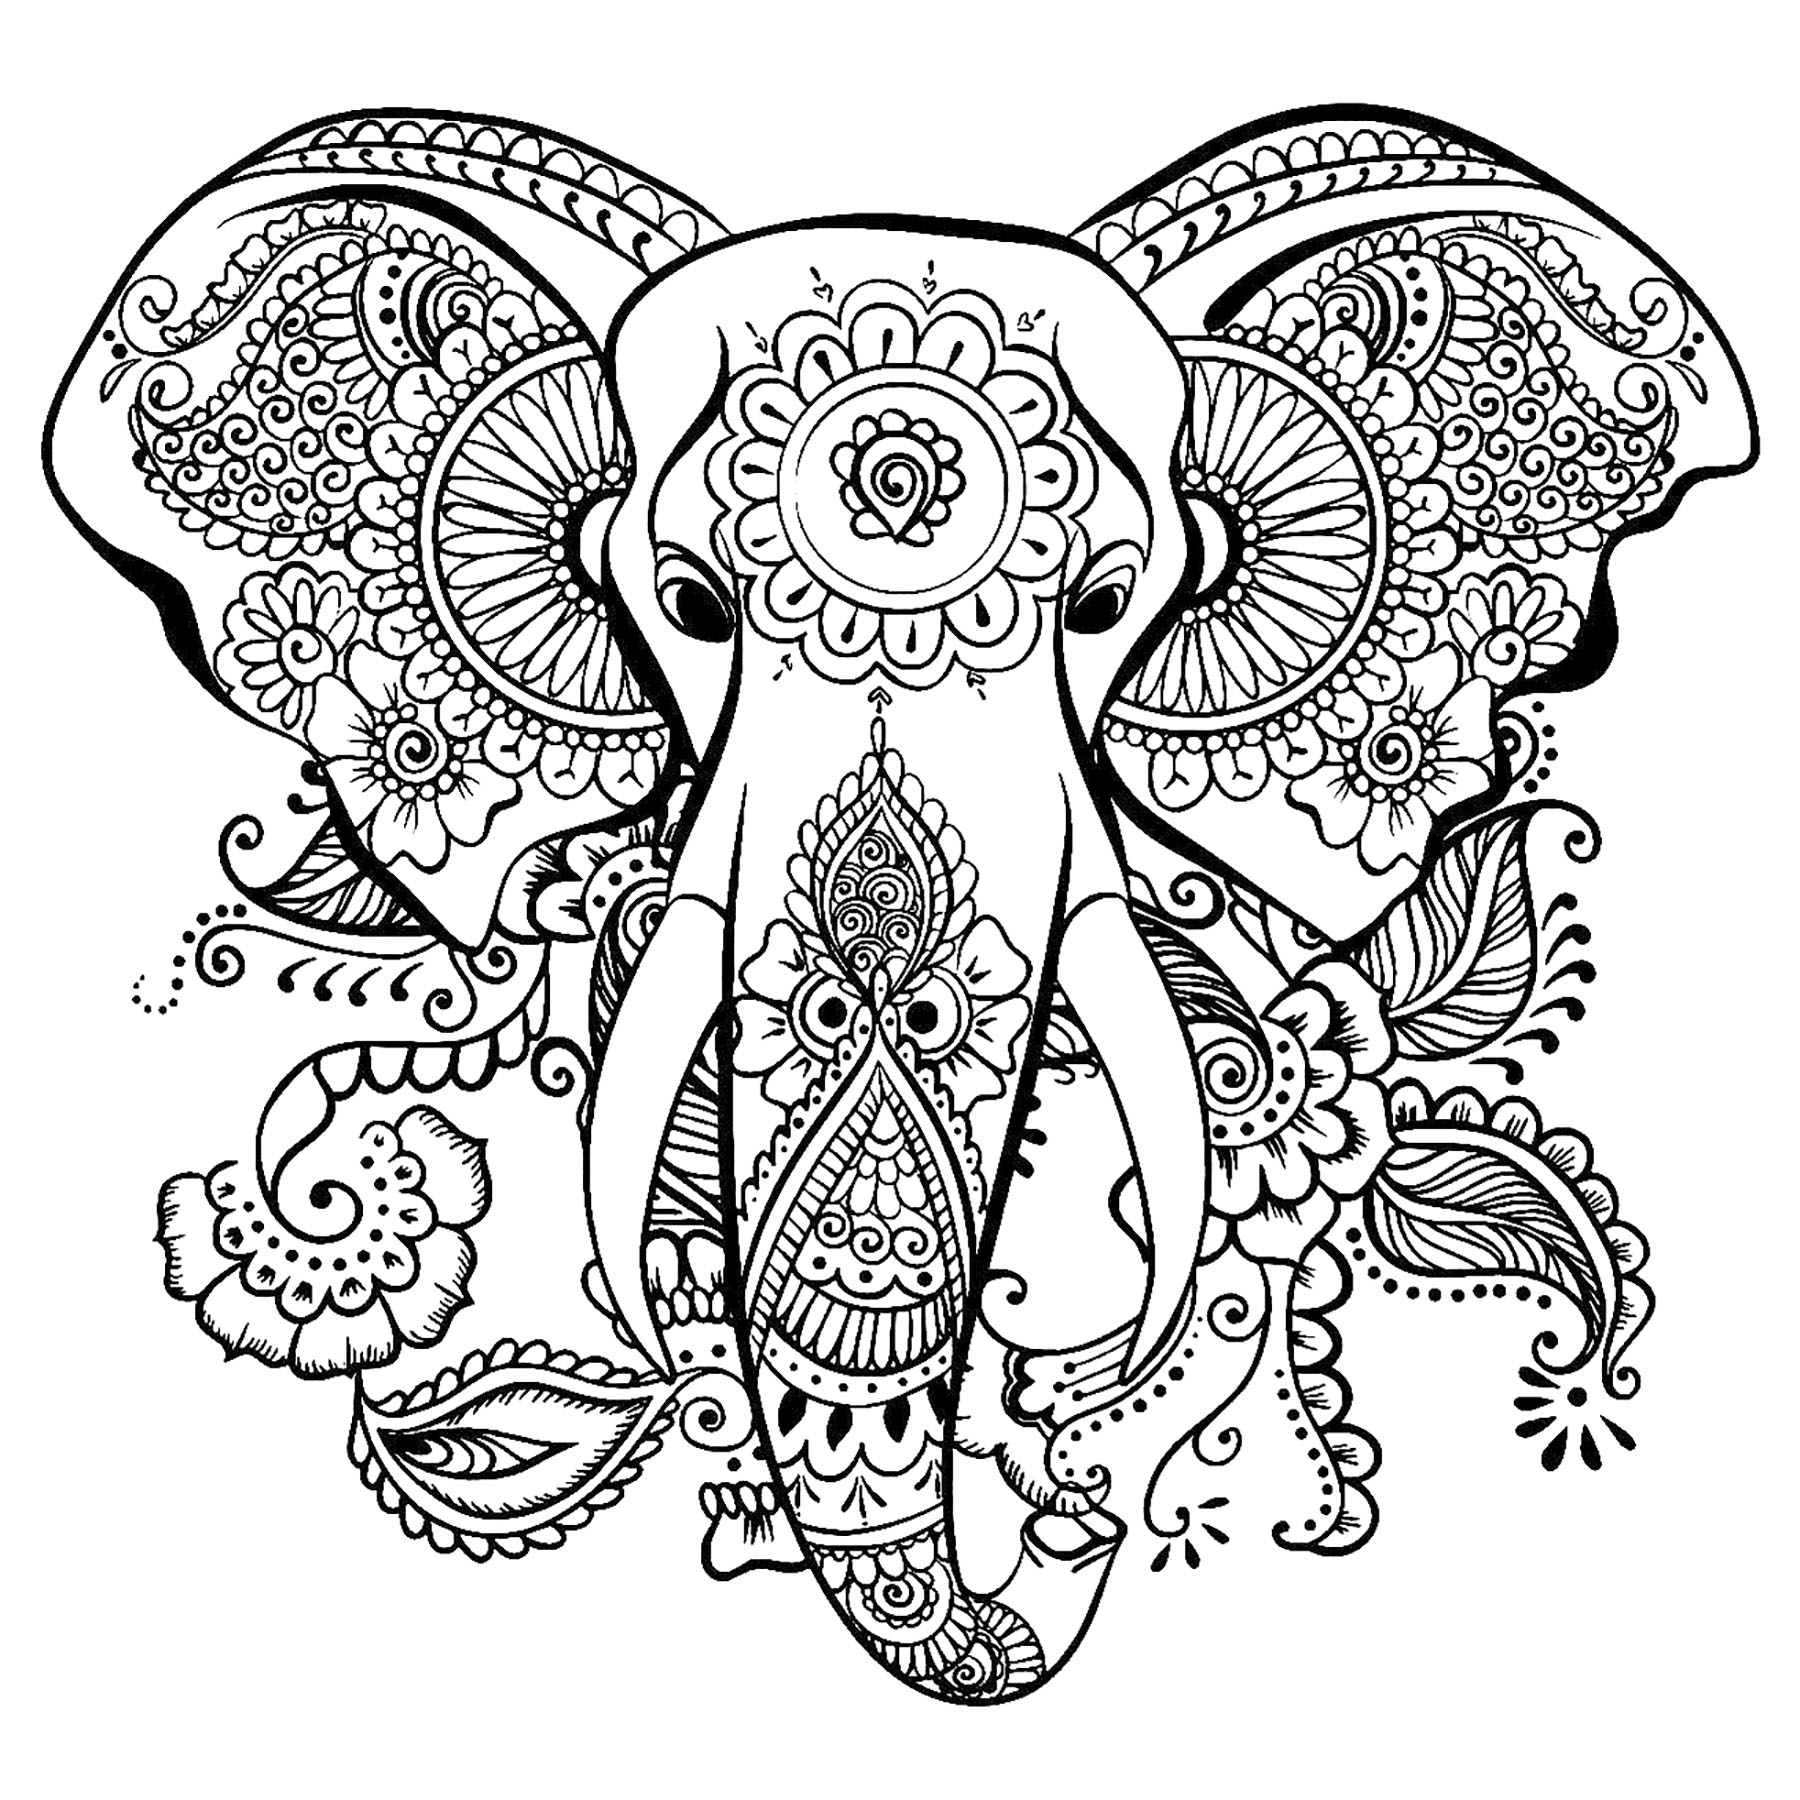 Cabeça de elefante para colorir, com bonitos padrões